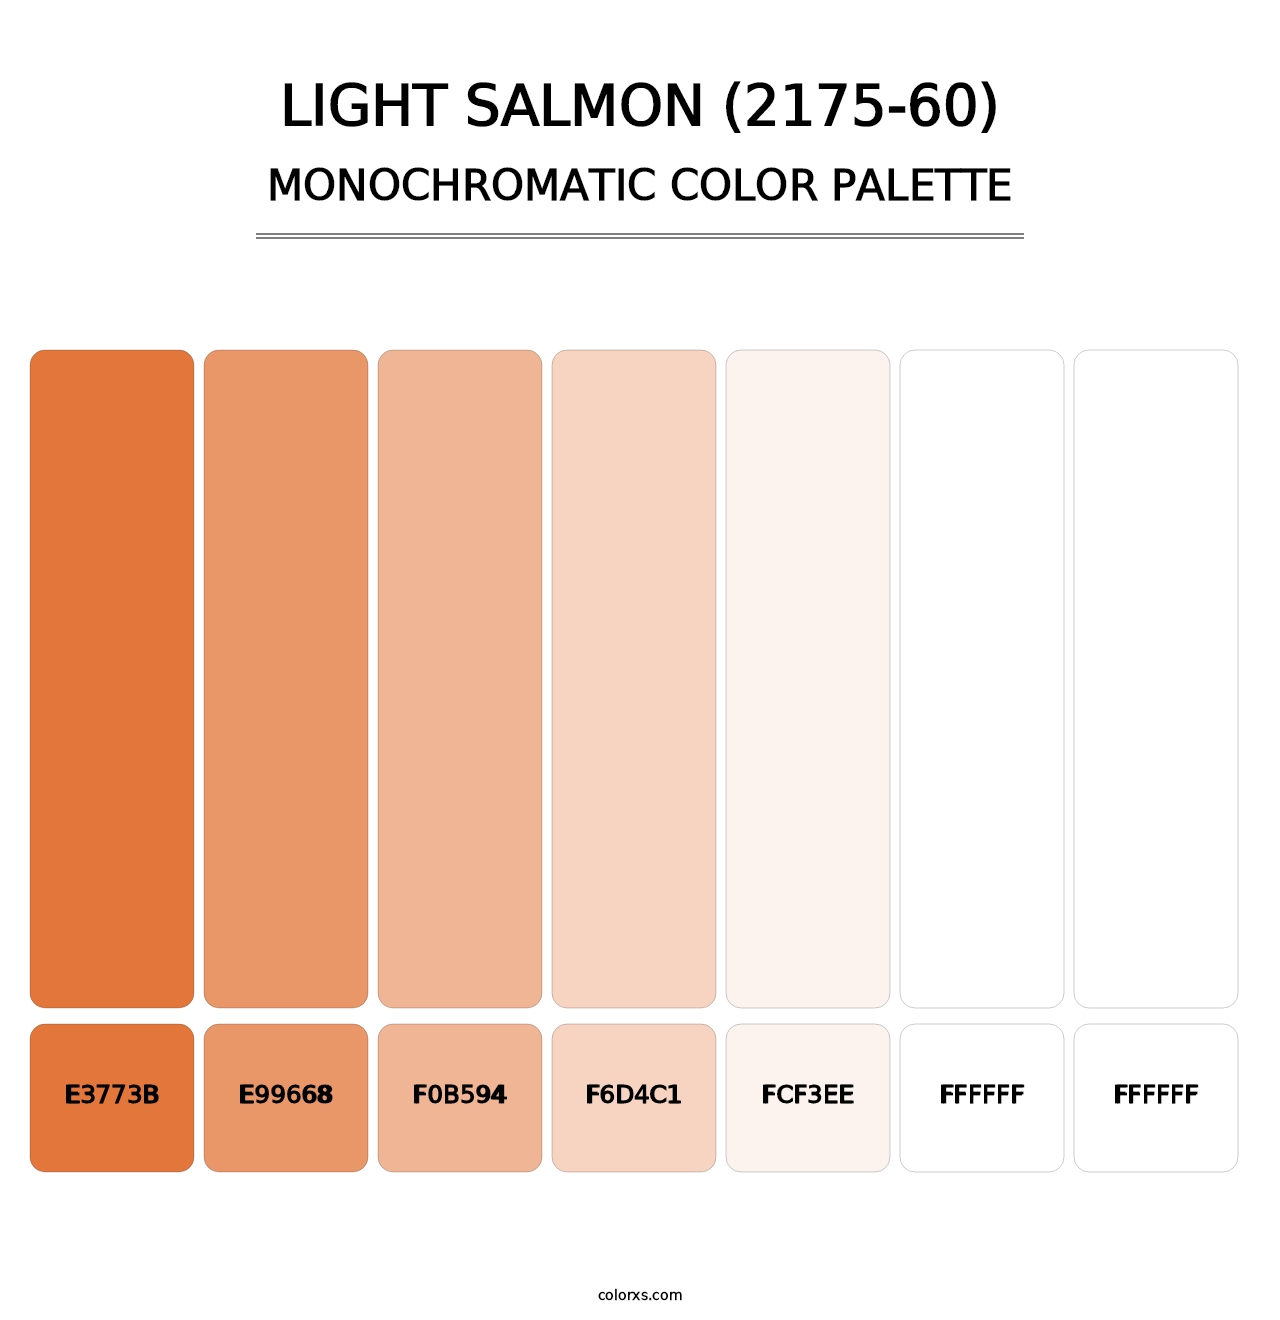 Light Salmon (2175-60) - Monochromatic Color Palette